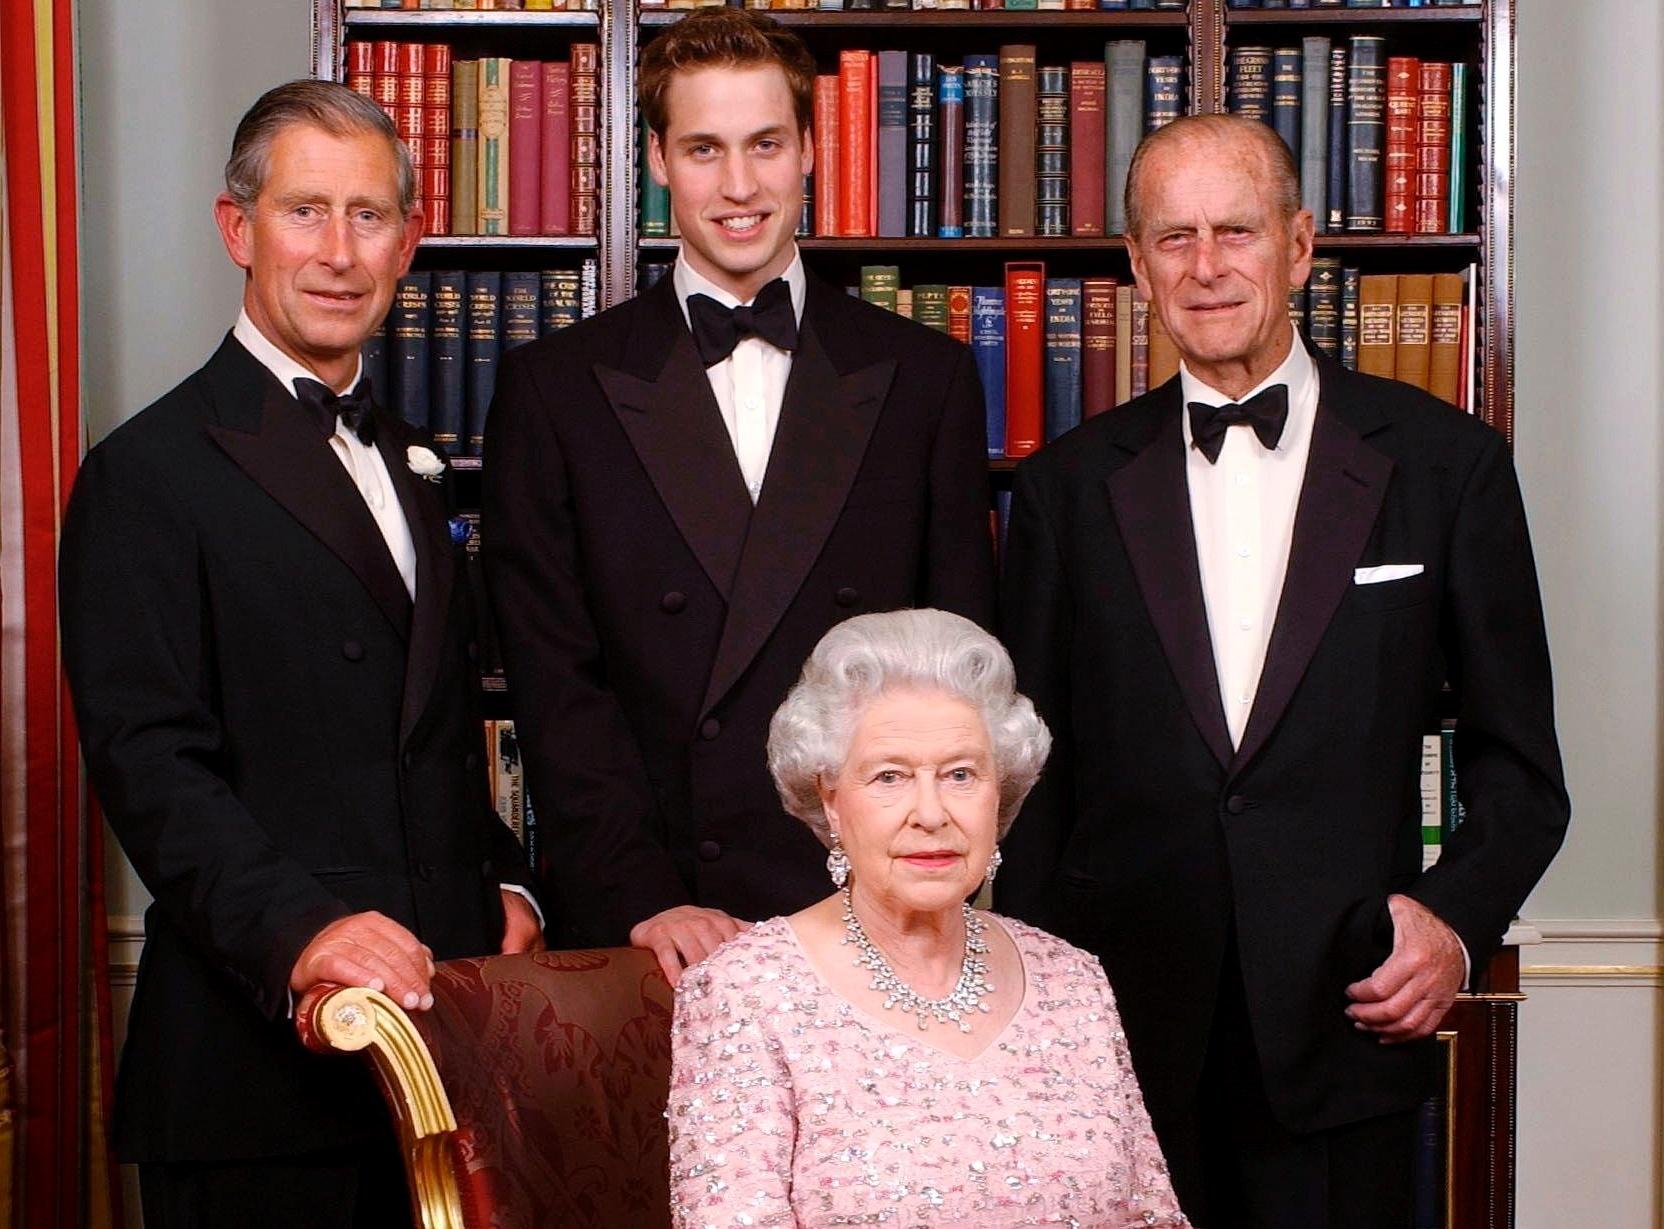 Rainha Elizabeth 2ª o marido, príncipe Phillip, com o filho Charles e o neto William - Getty Images